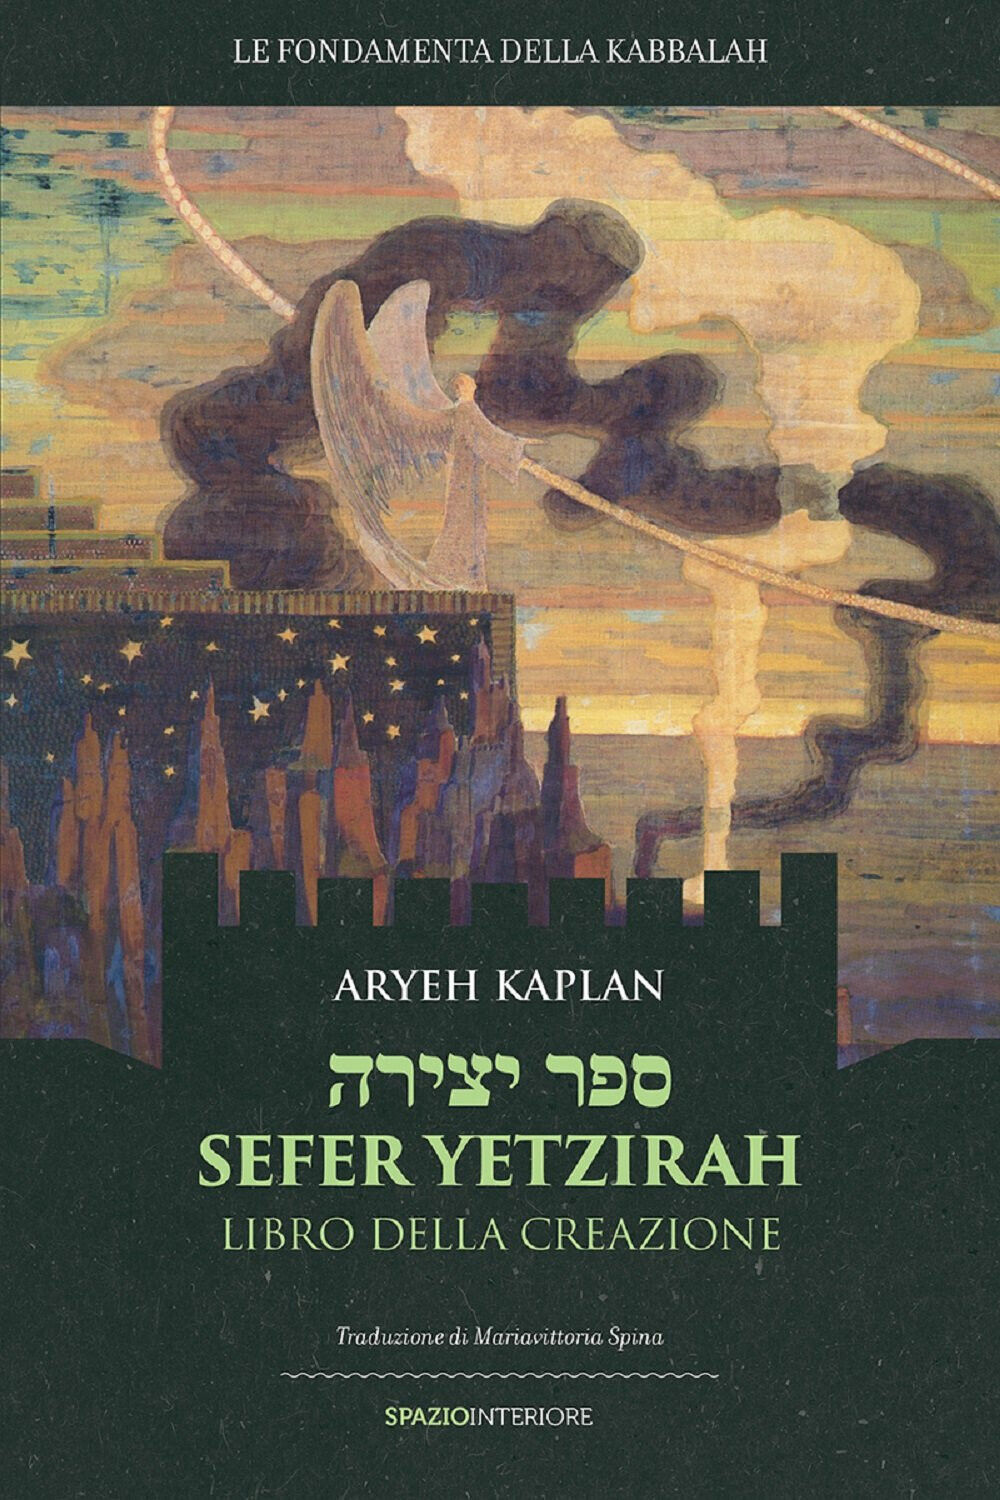 Sefer Yetzirah. Libro della creazione - Aryeh Kaplan - Spazio interiore, 2016 libro usato